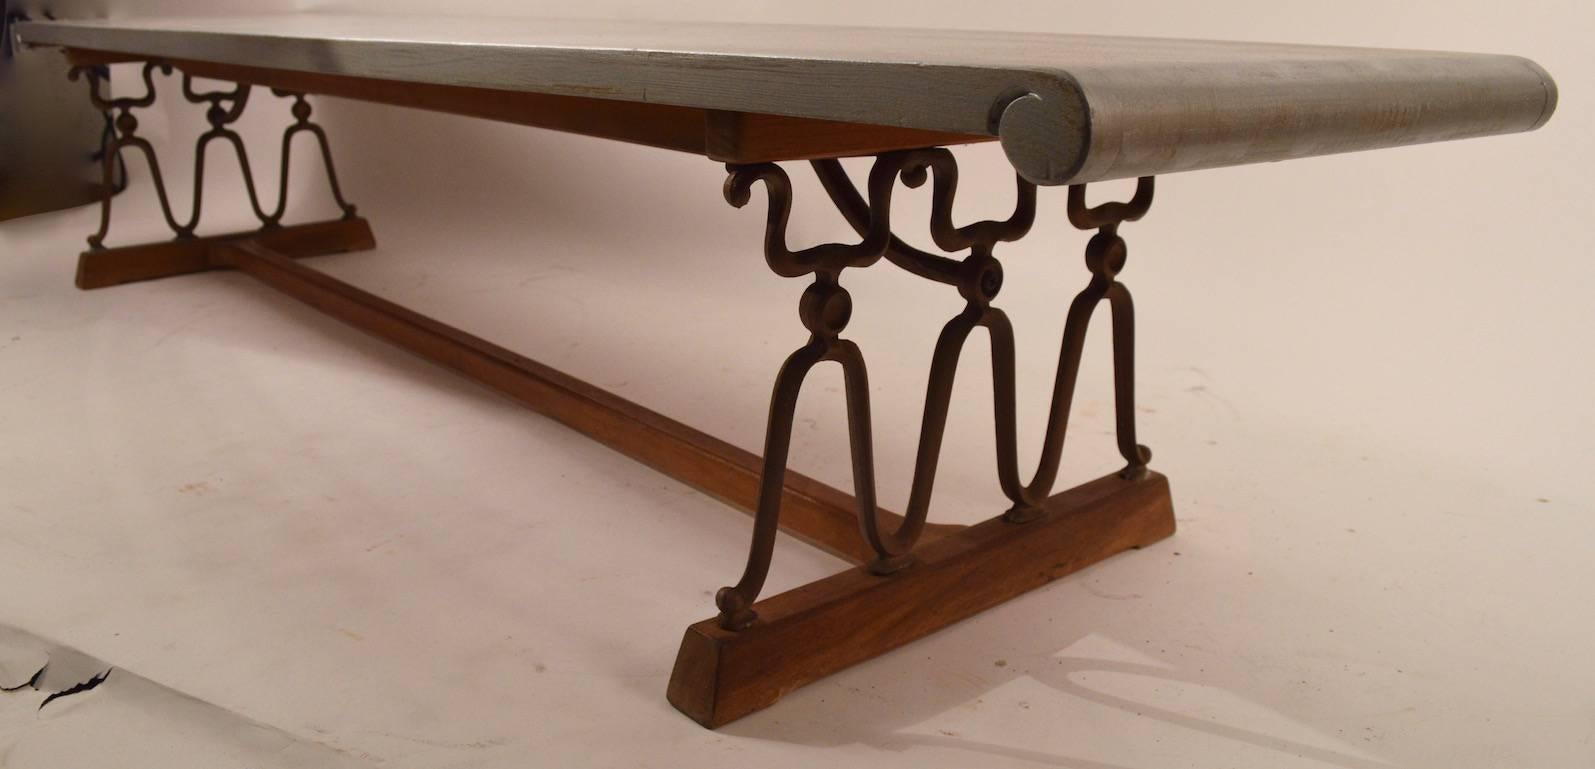 Drexel produced, John Van Koert designed Casa Del Sol bench coffee table. The top has been painted 